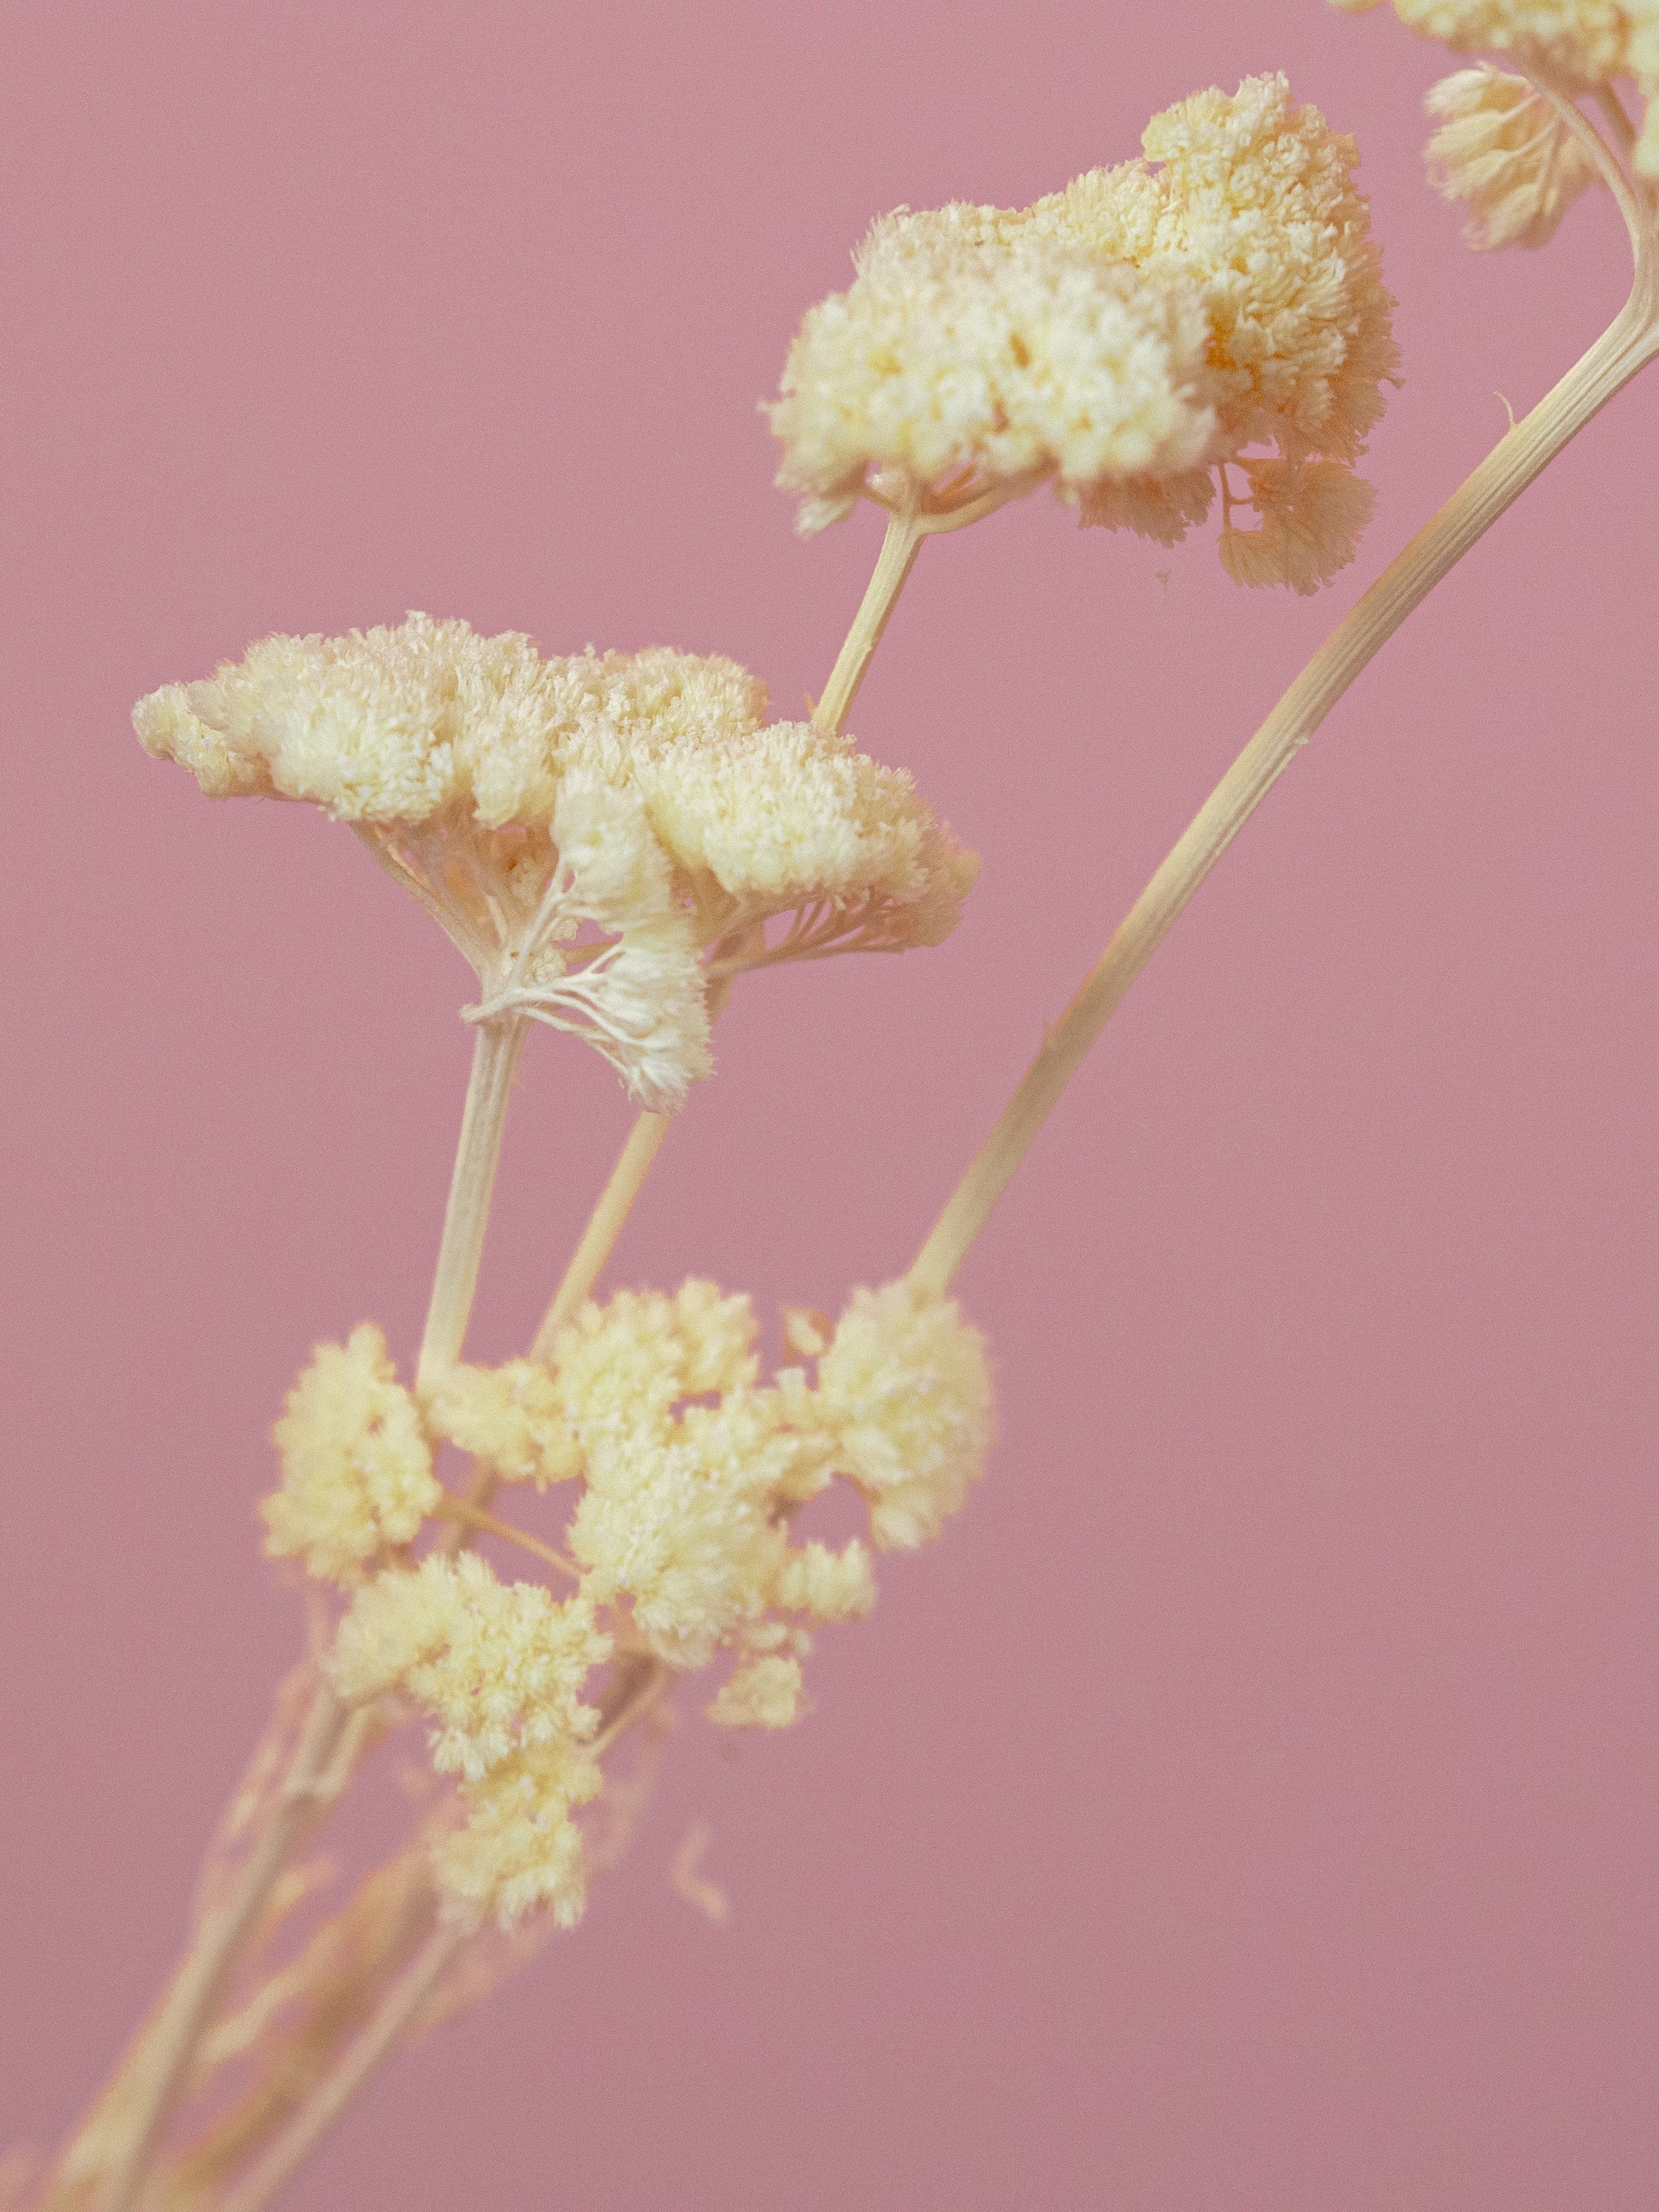 trockenblumen-achillea-schafgarbe-weiss-gebleicht-beflowerly